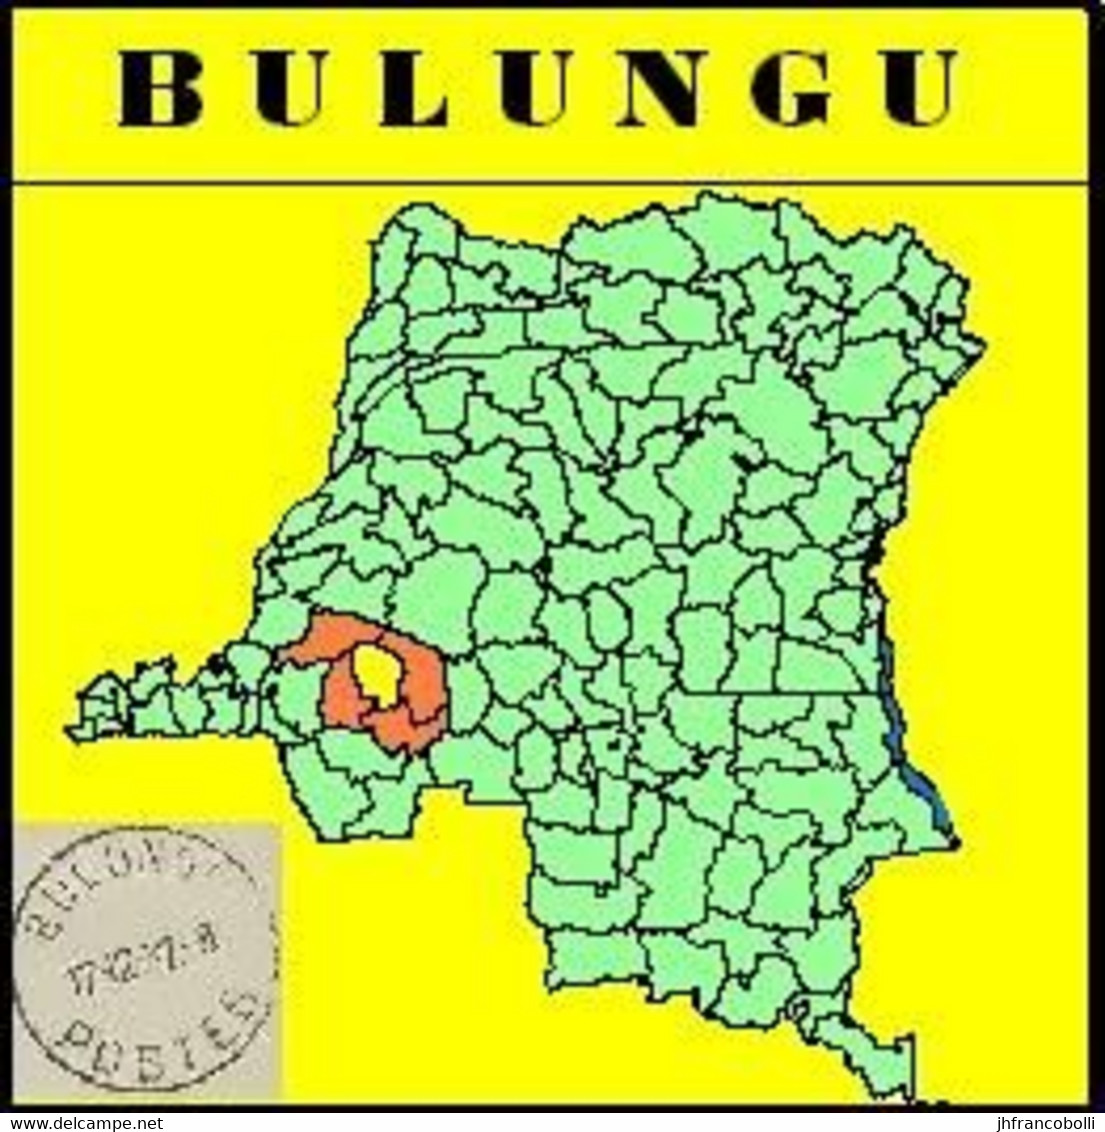 BULUNGU BELGIAN CONGO / CONGO BELGE CANCEL STUDY [2] WITH COB 263 TWO STAMPS - Errors & Oddities